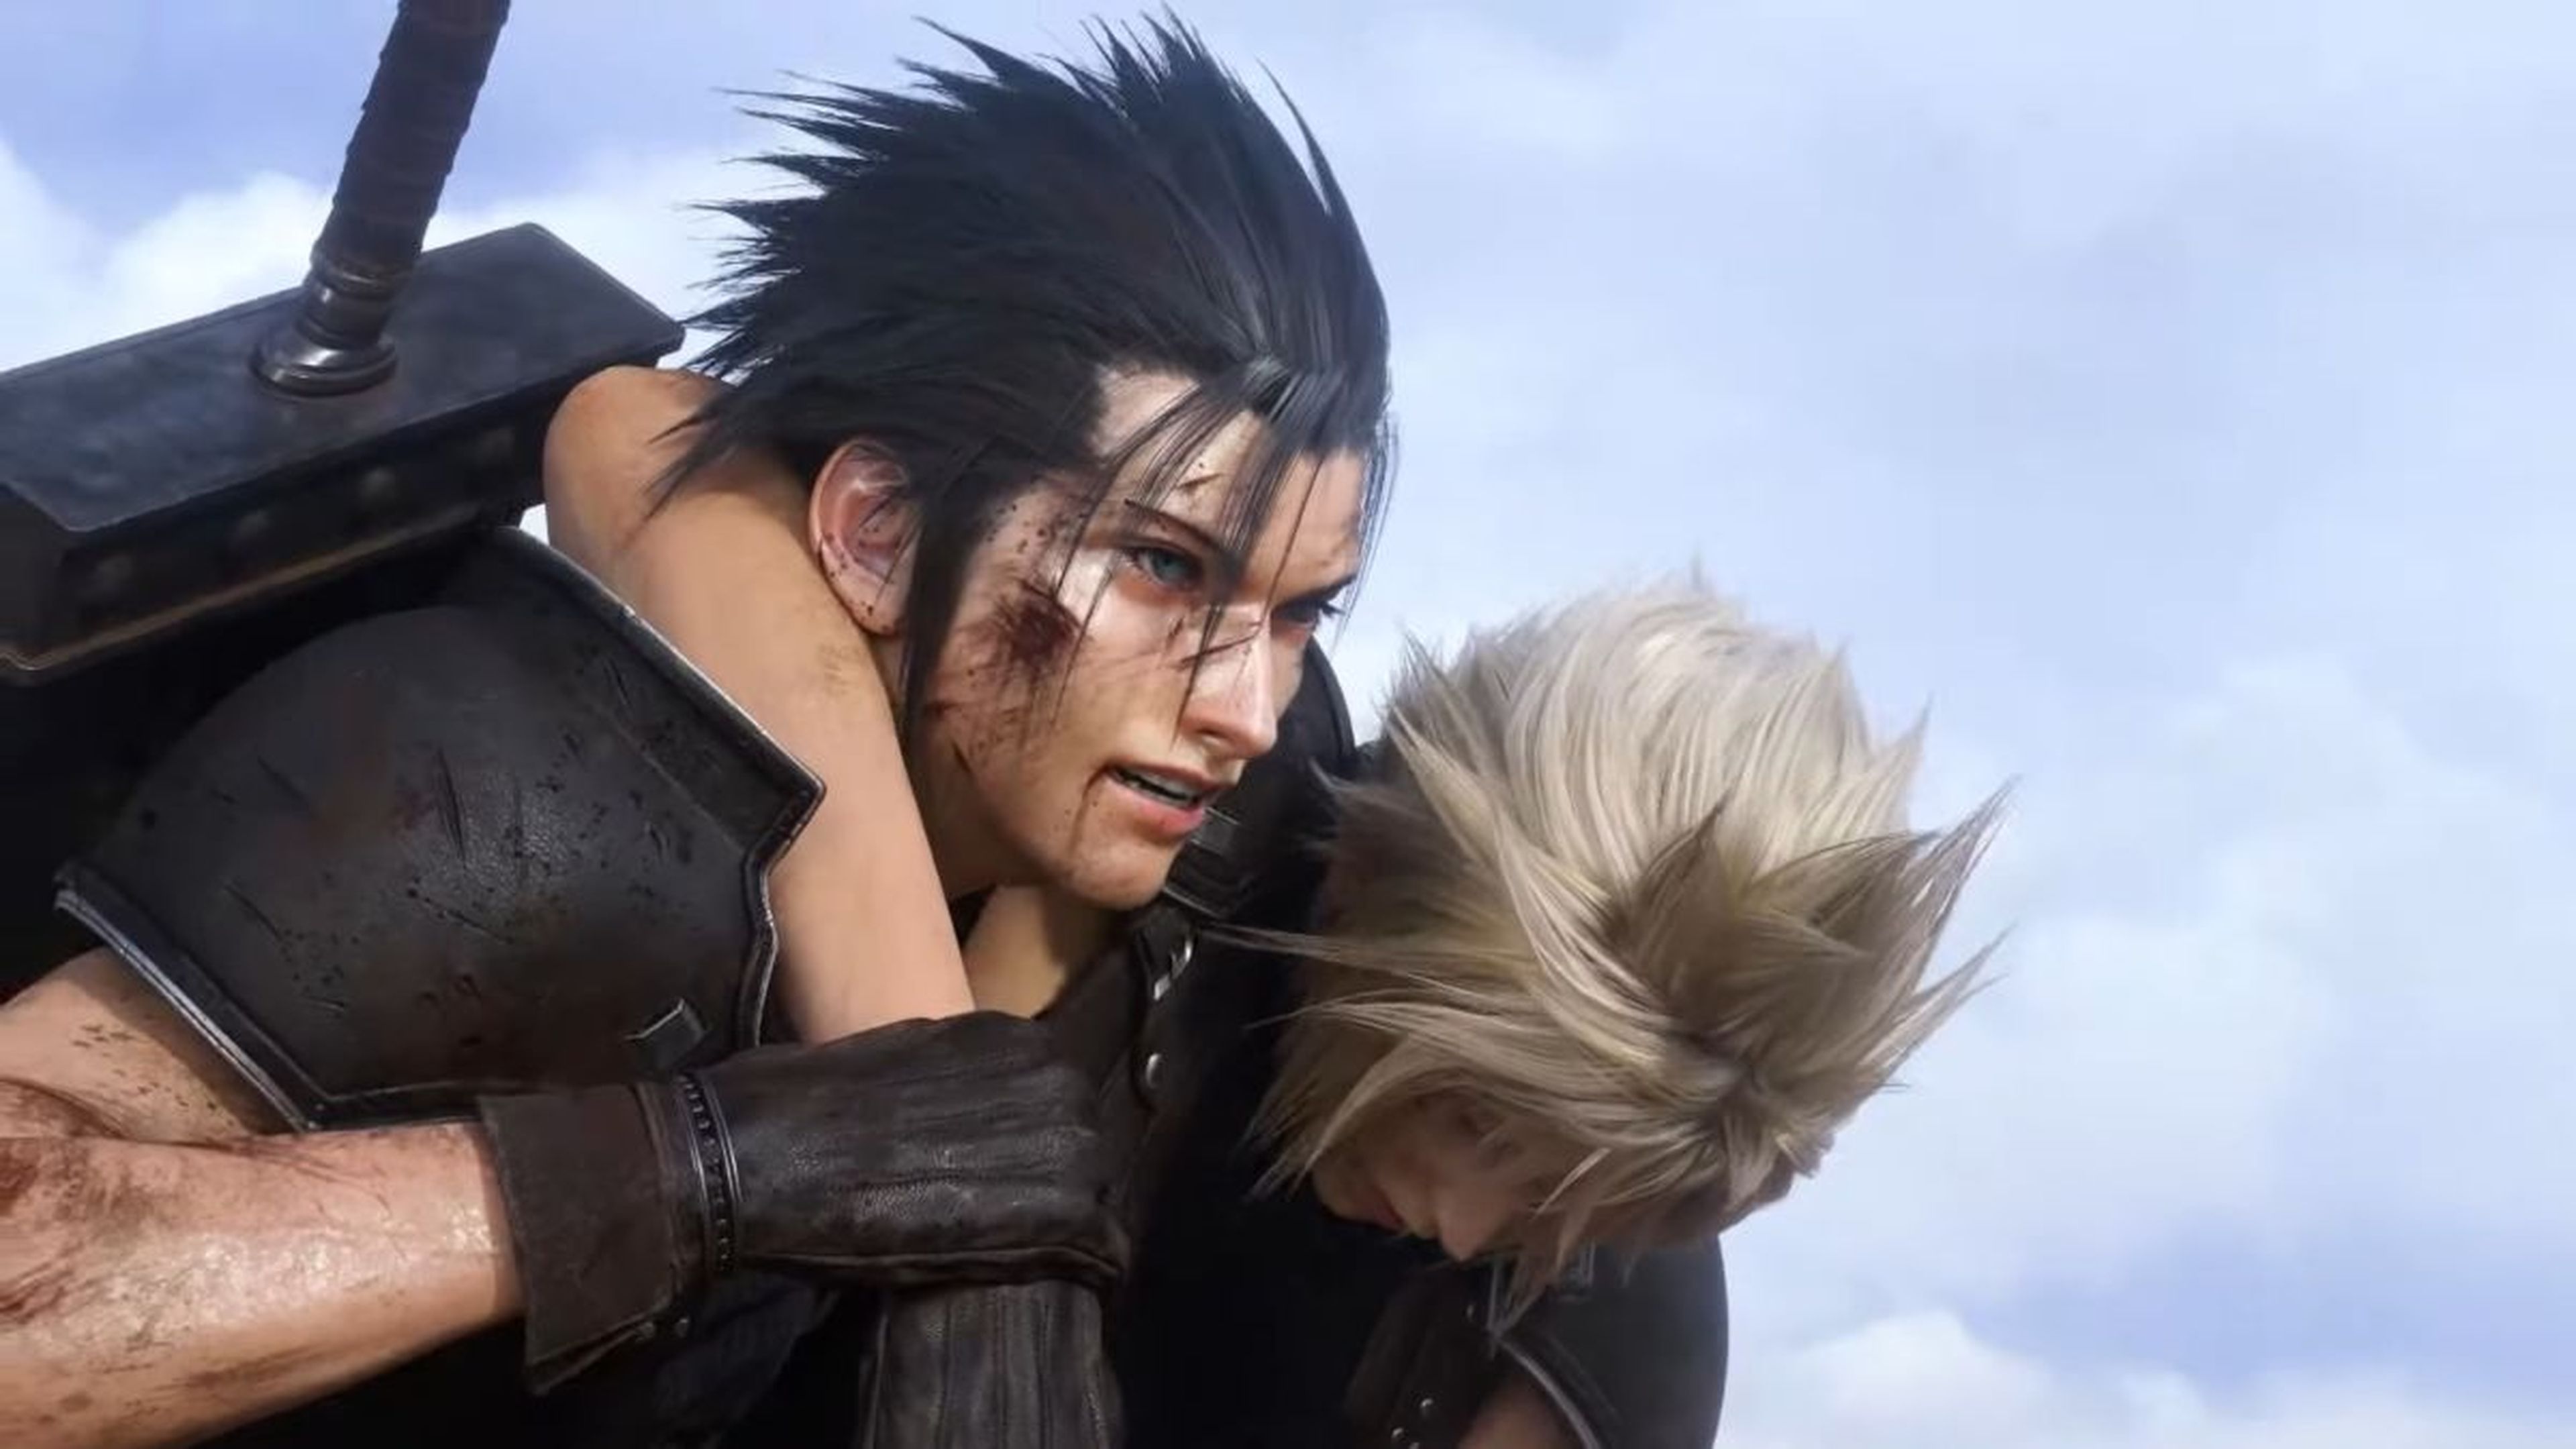 Final Fantasy VII Rebirth avanza bien en su desarrollo, señala Square Enix